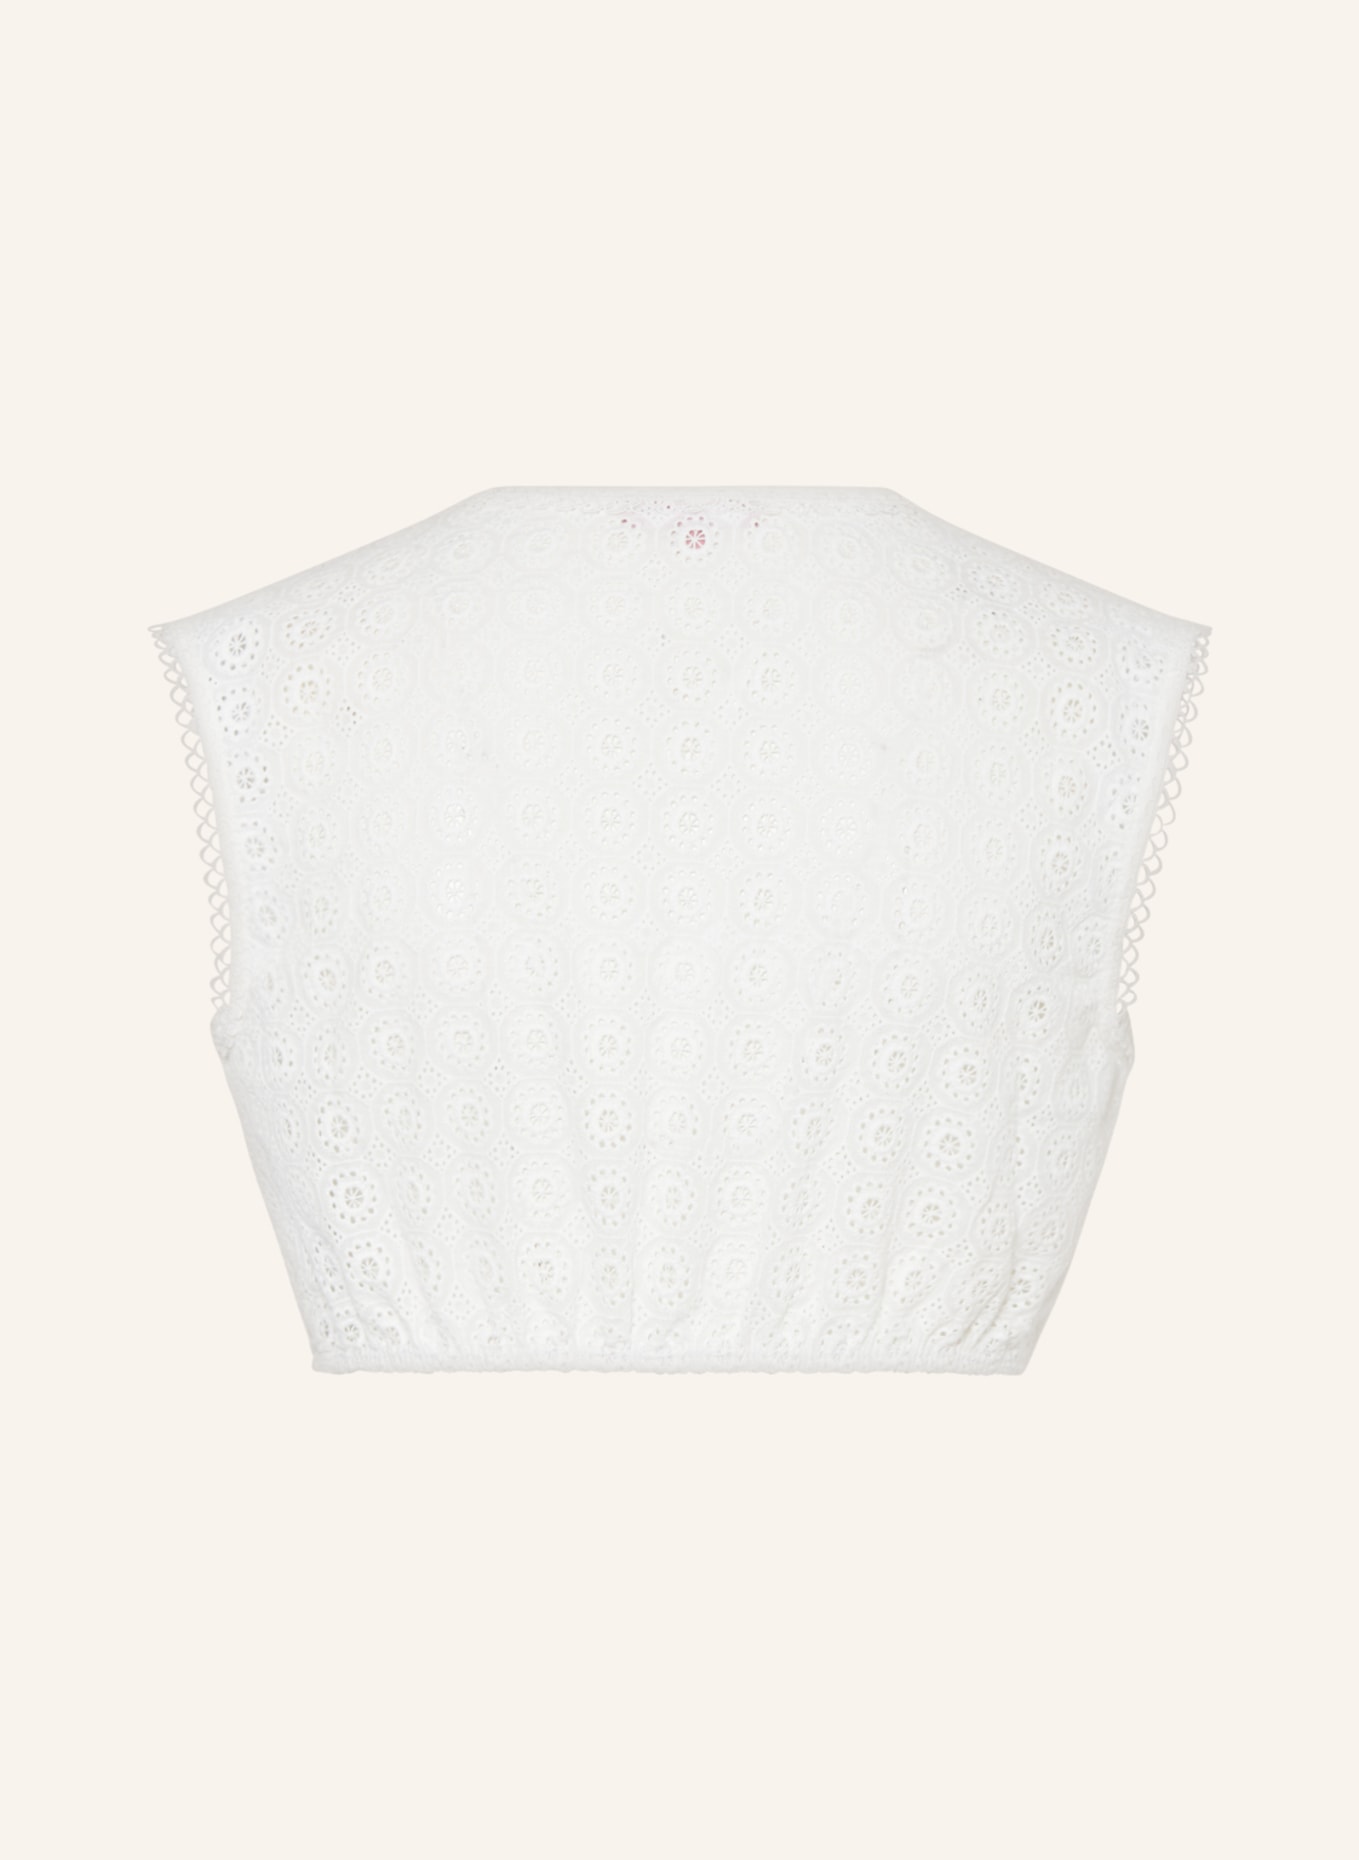 KRÜGER Dirndl blouse, Color: WHITE (Image 2)